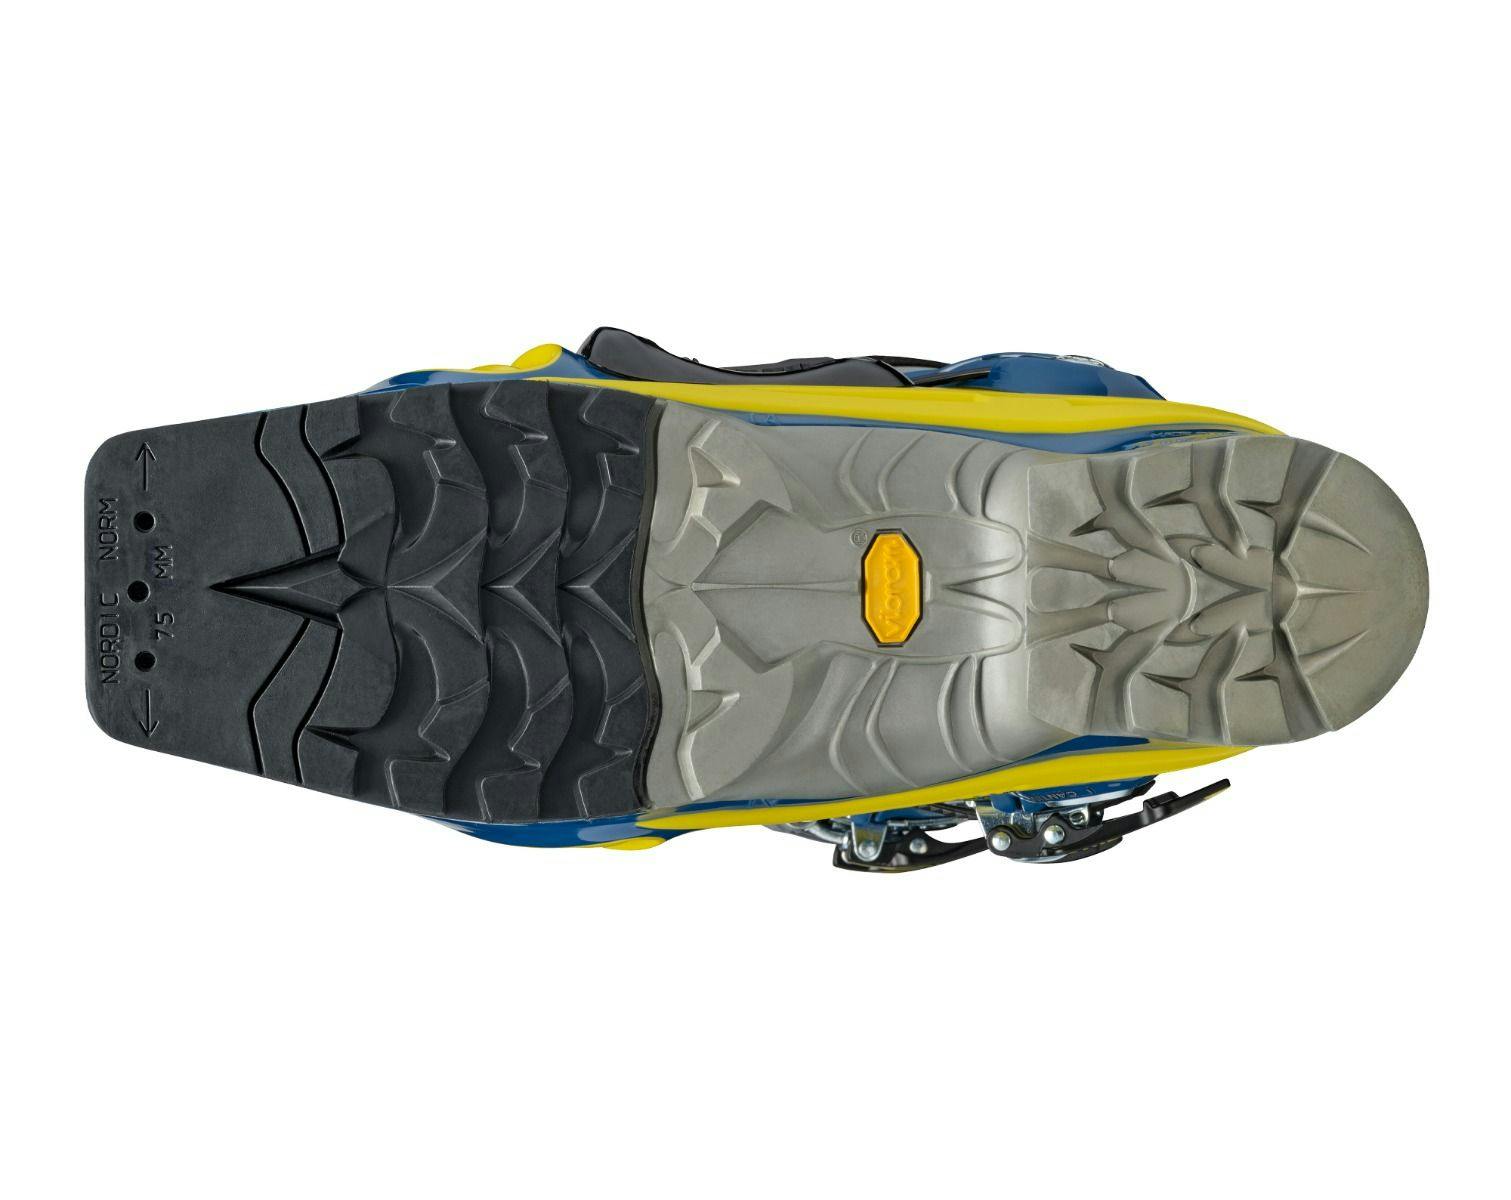 Scarpa T2 ECO Telemark 95 Ski Boots · 2022